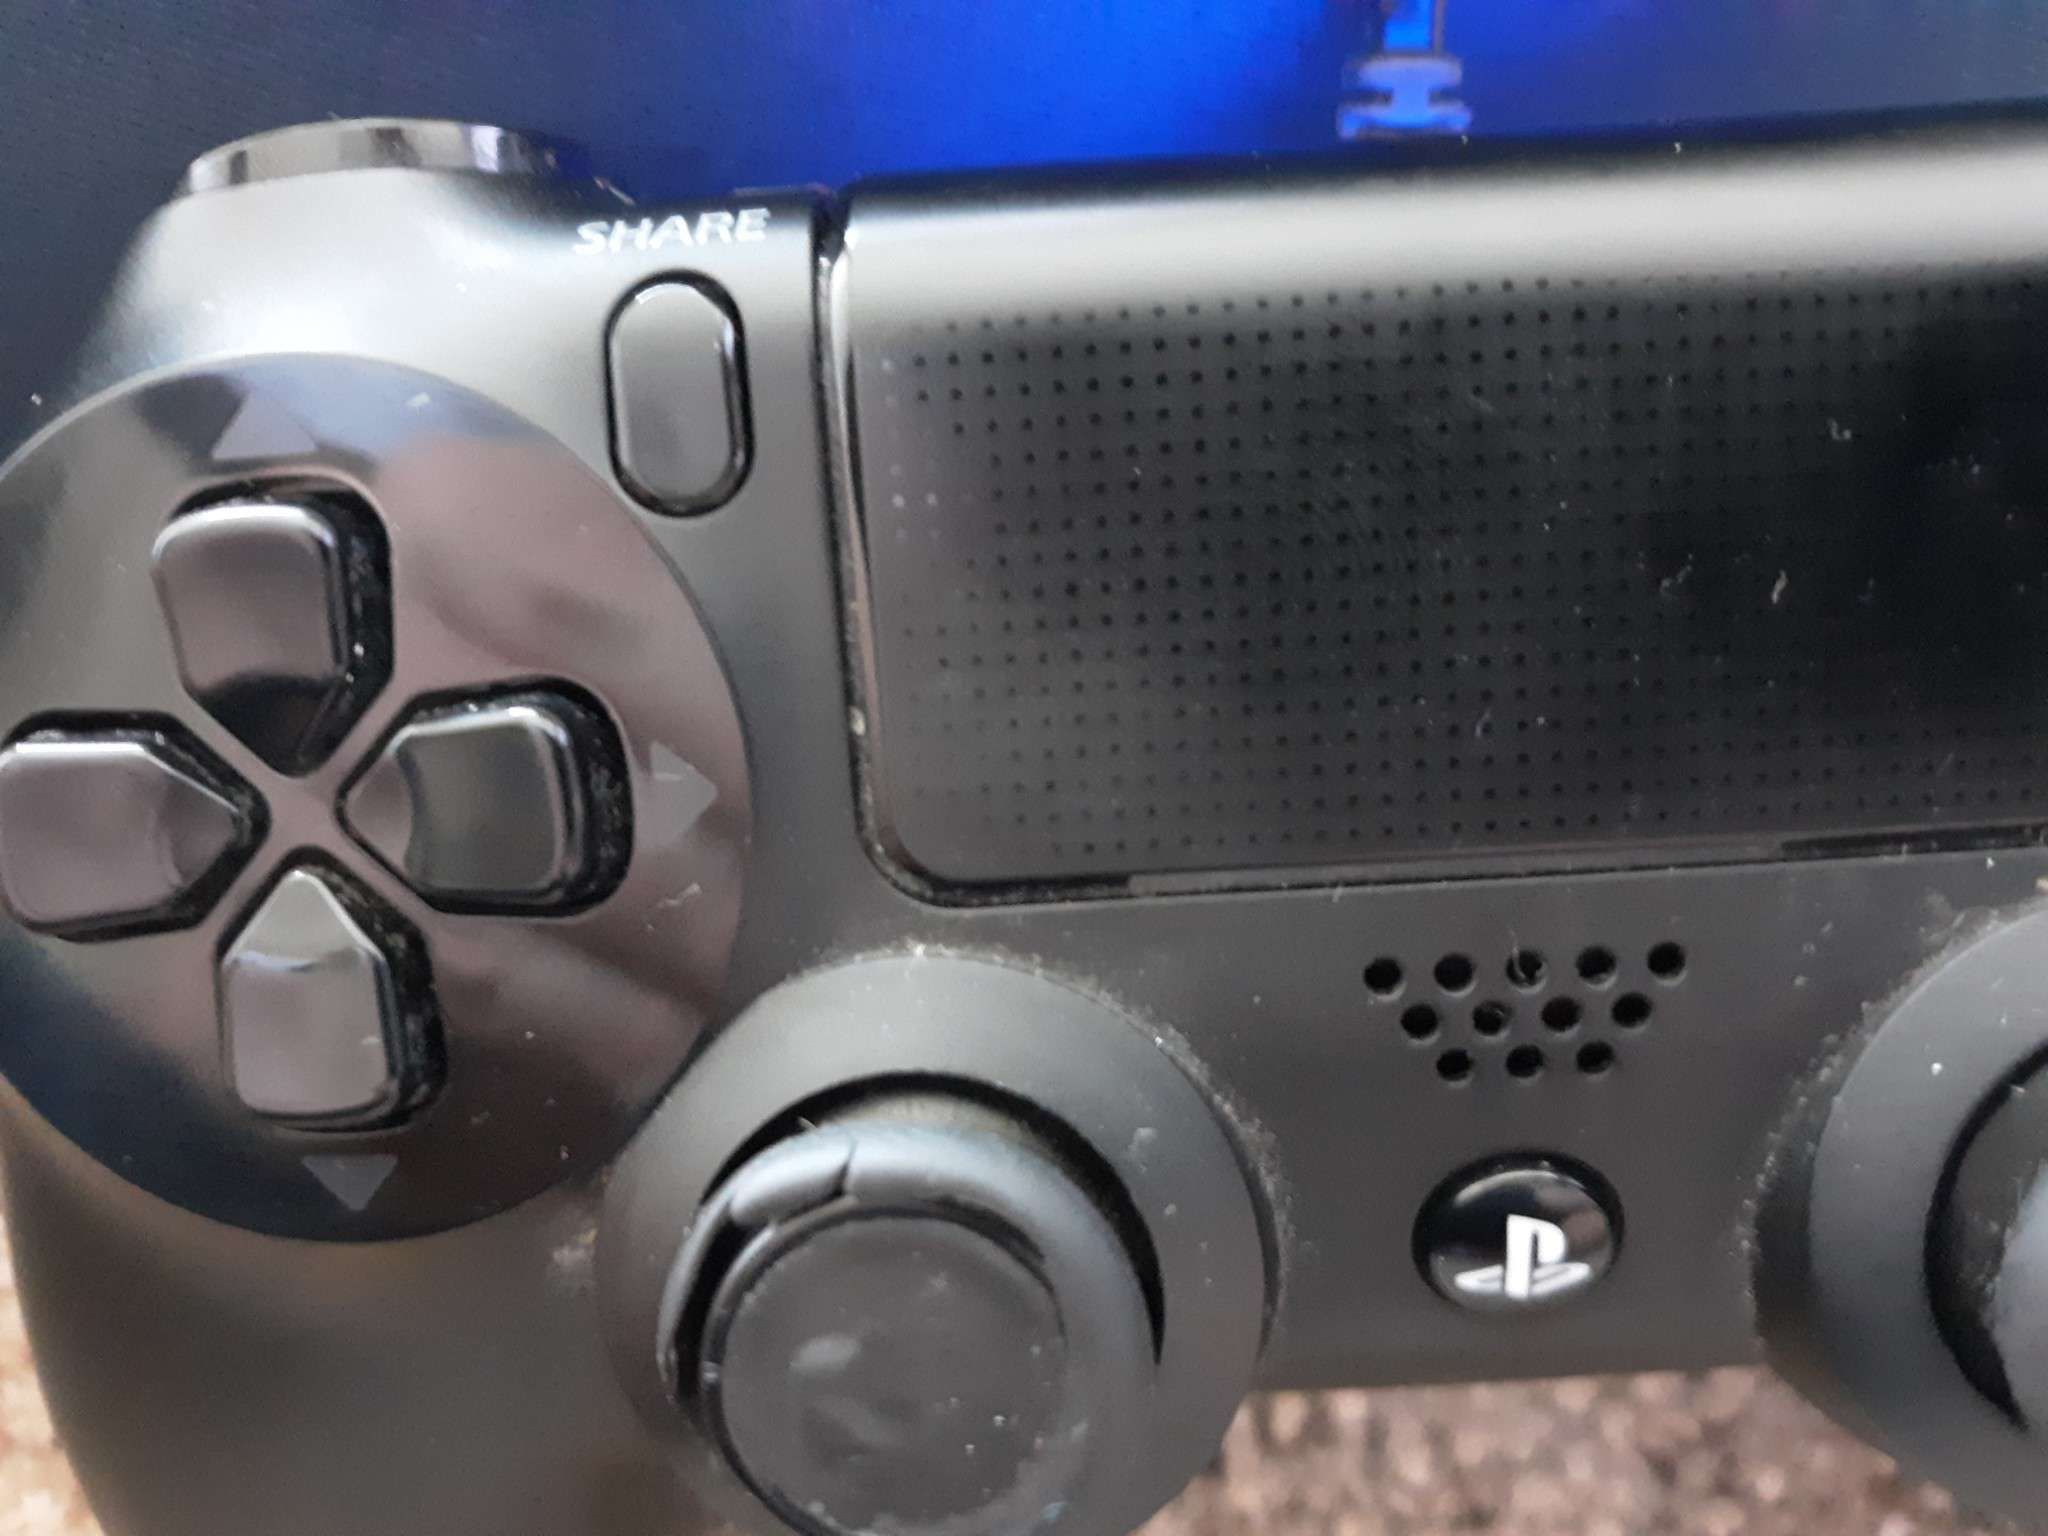 Нажмите одновременно кнопку PS и кнопку «Поделиться» на DualShock 4.